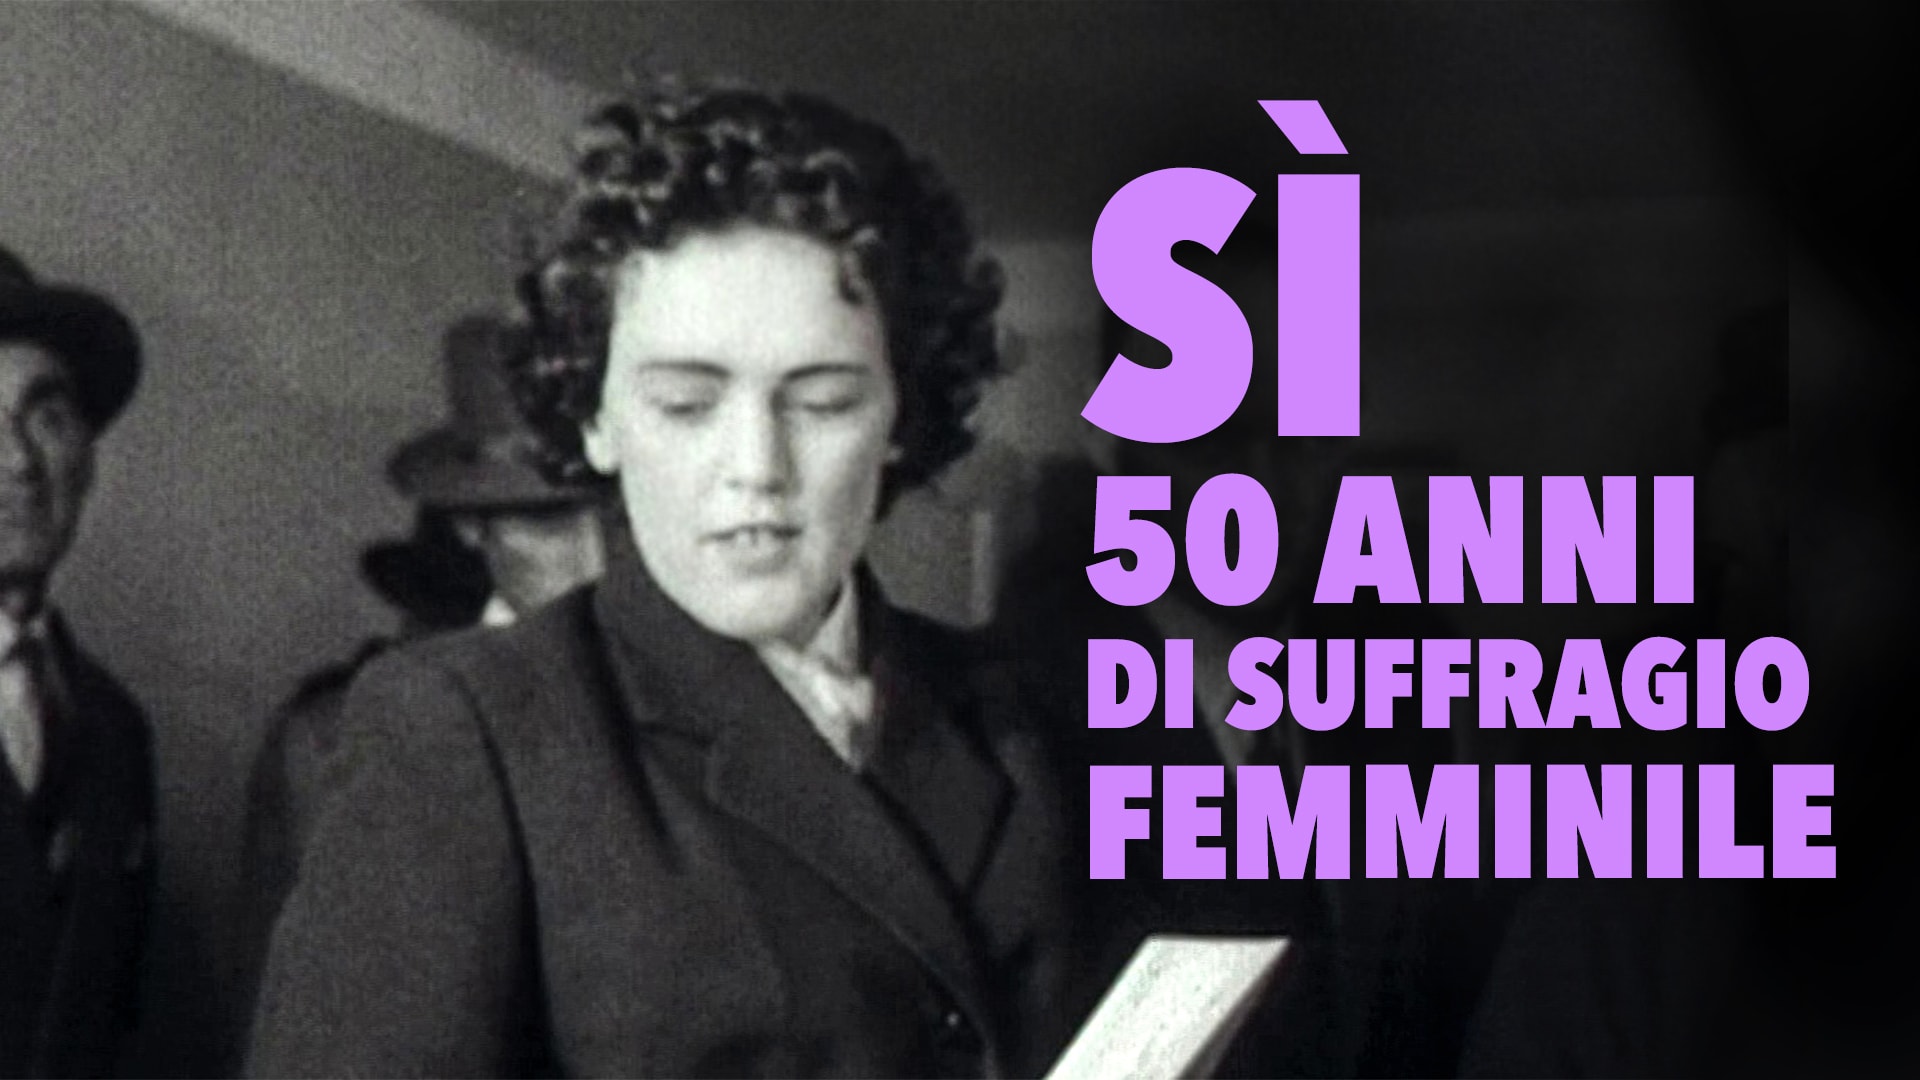 SÌ - 50 anni di suffragio femminile